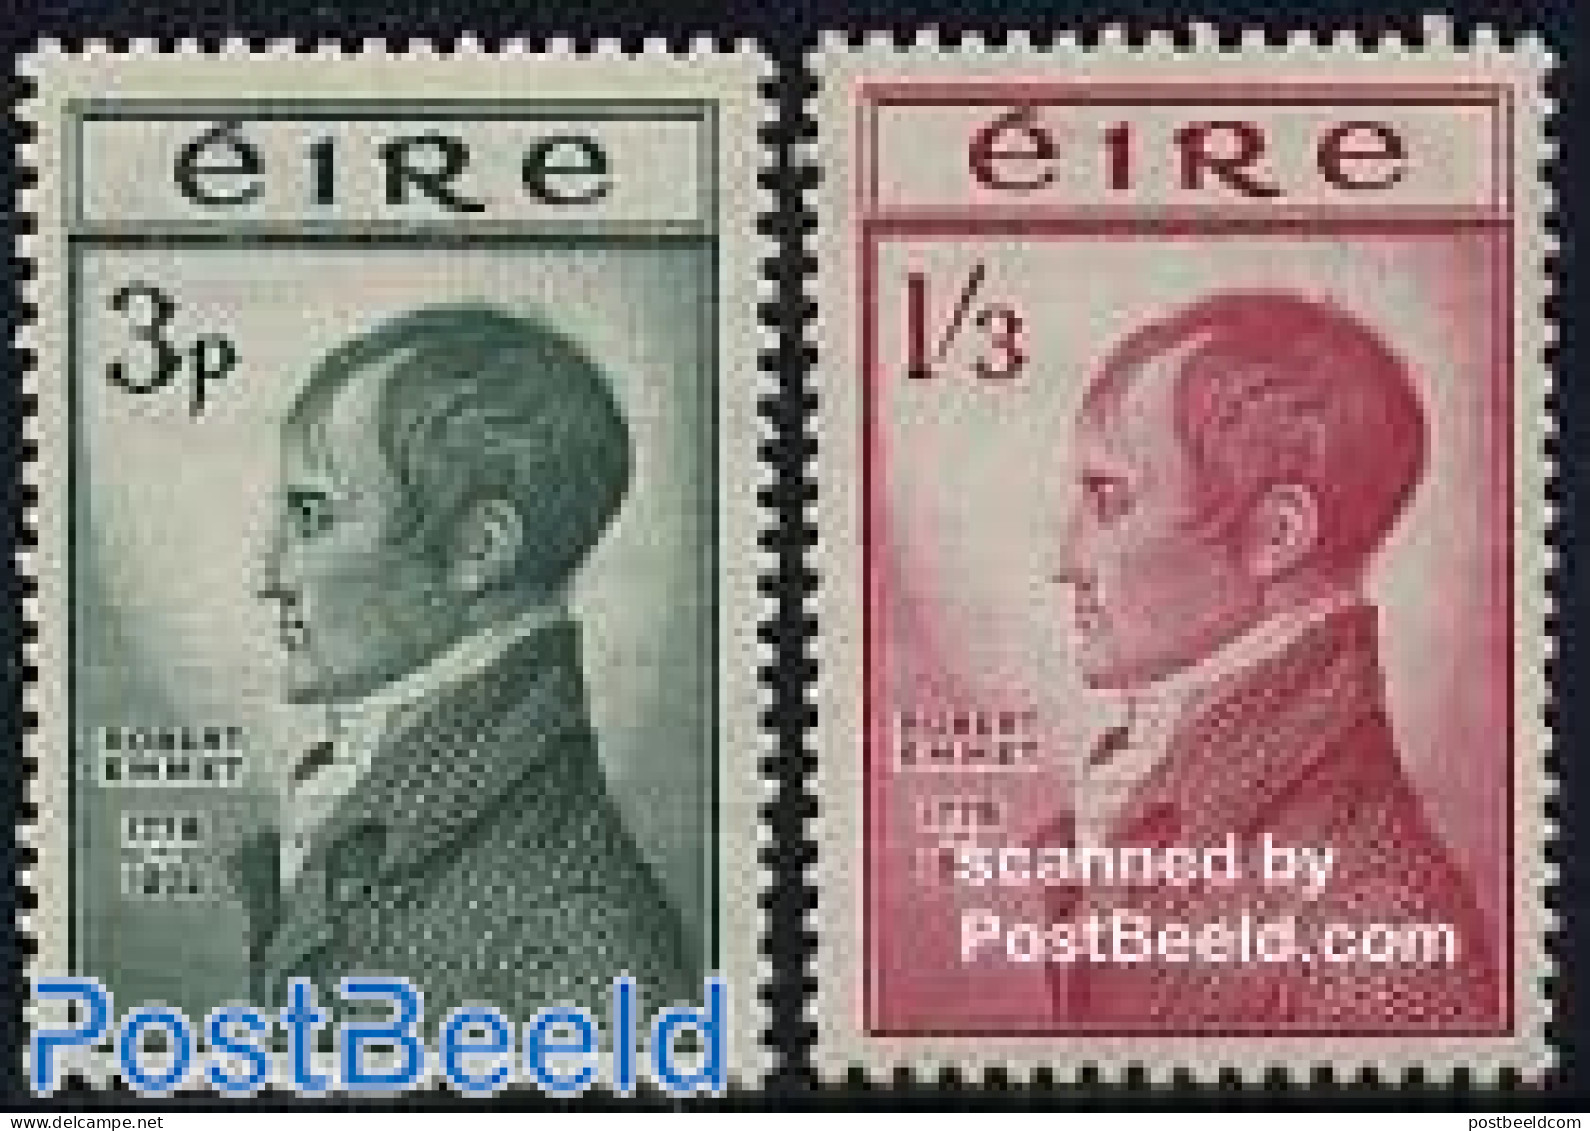 Ireland 1953 Robert Emmel 2v, Mint NH - Unused Stamps